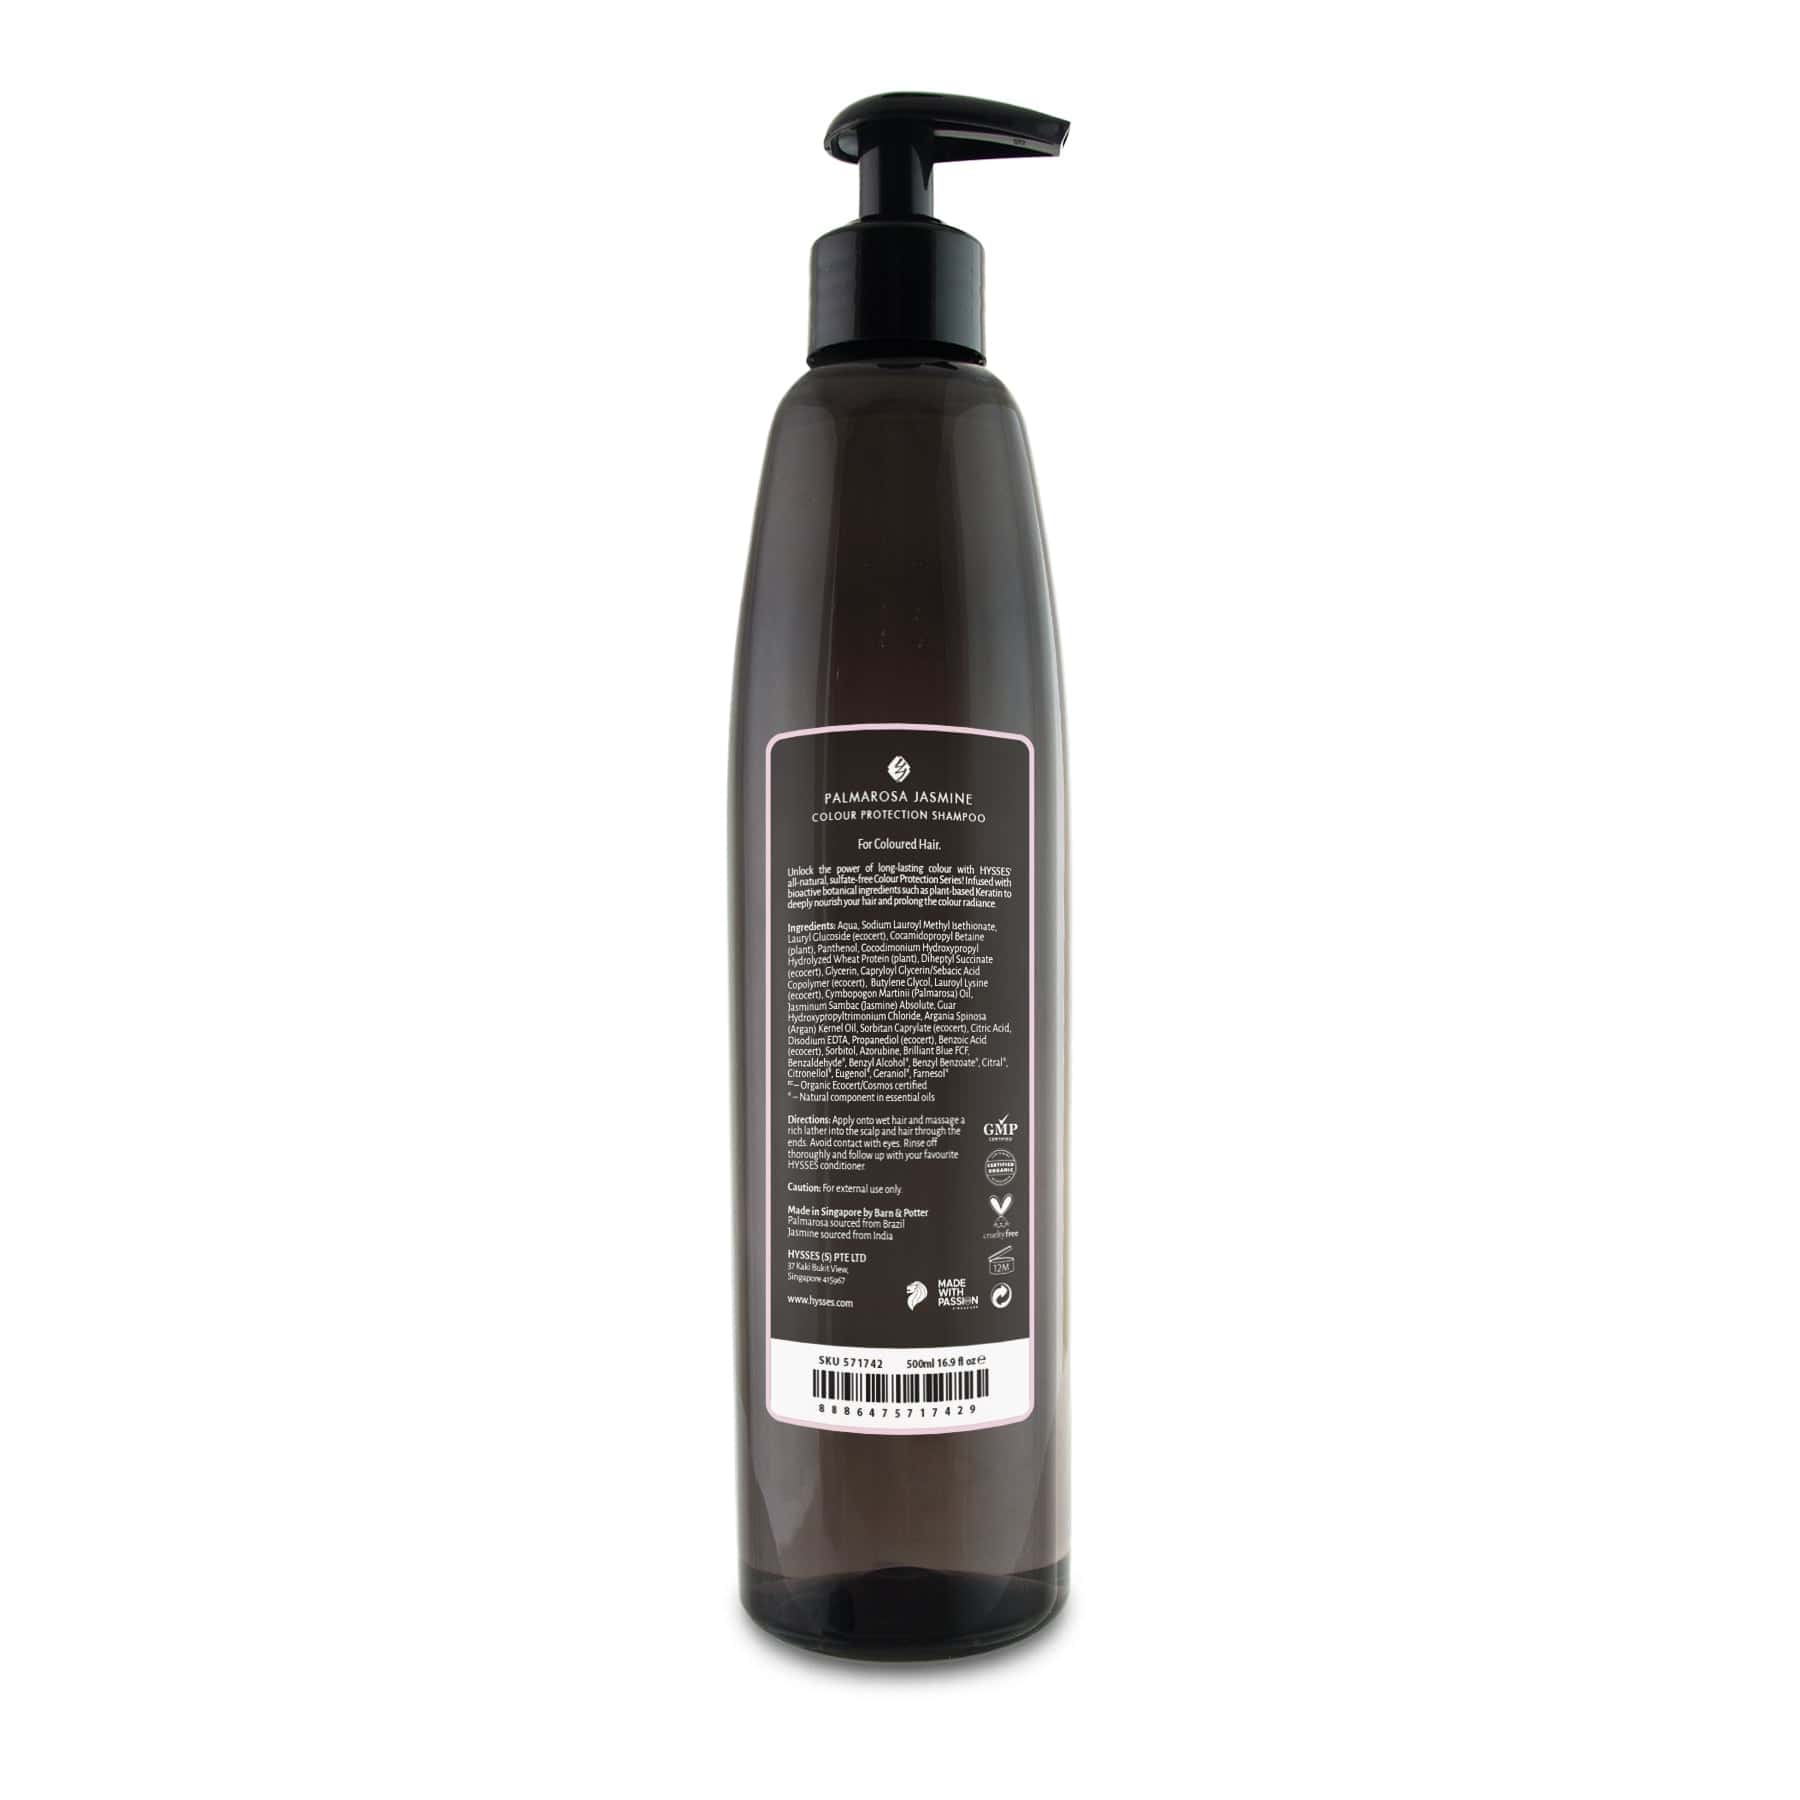 Hysses Hair Care 500ml Colour Protection Shampoo, Palmarosa Jasmine, 500ml